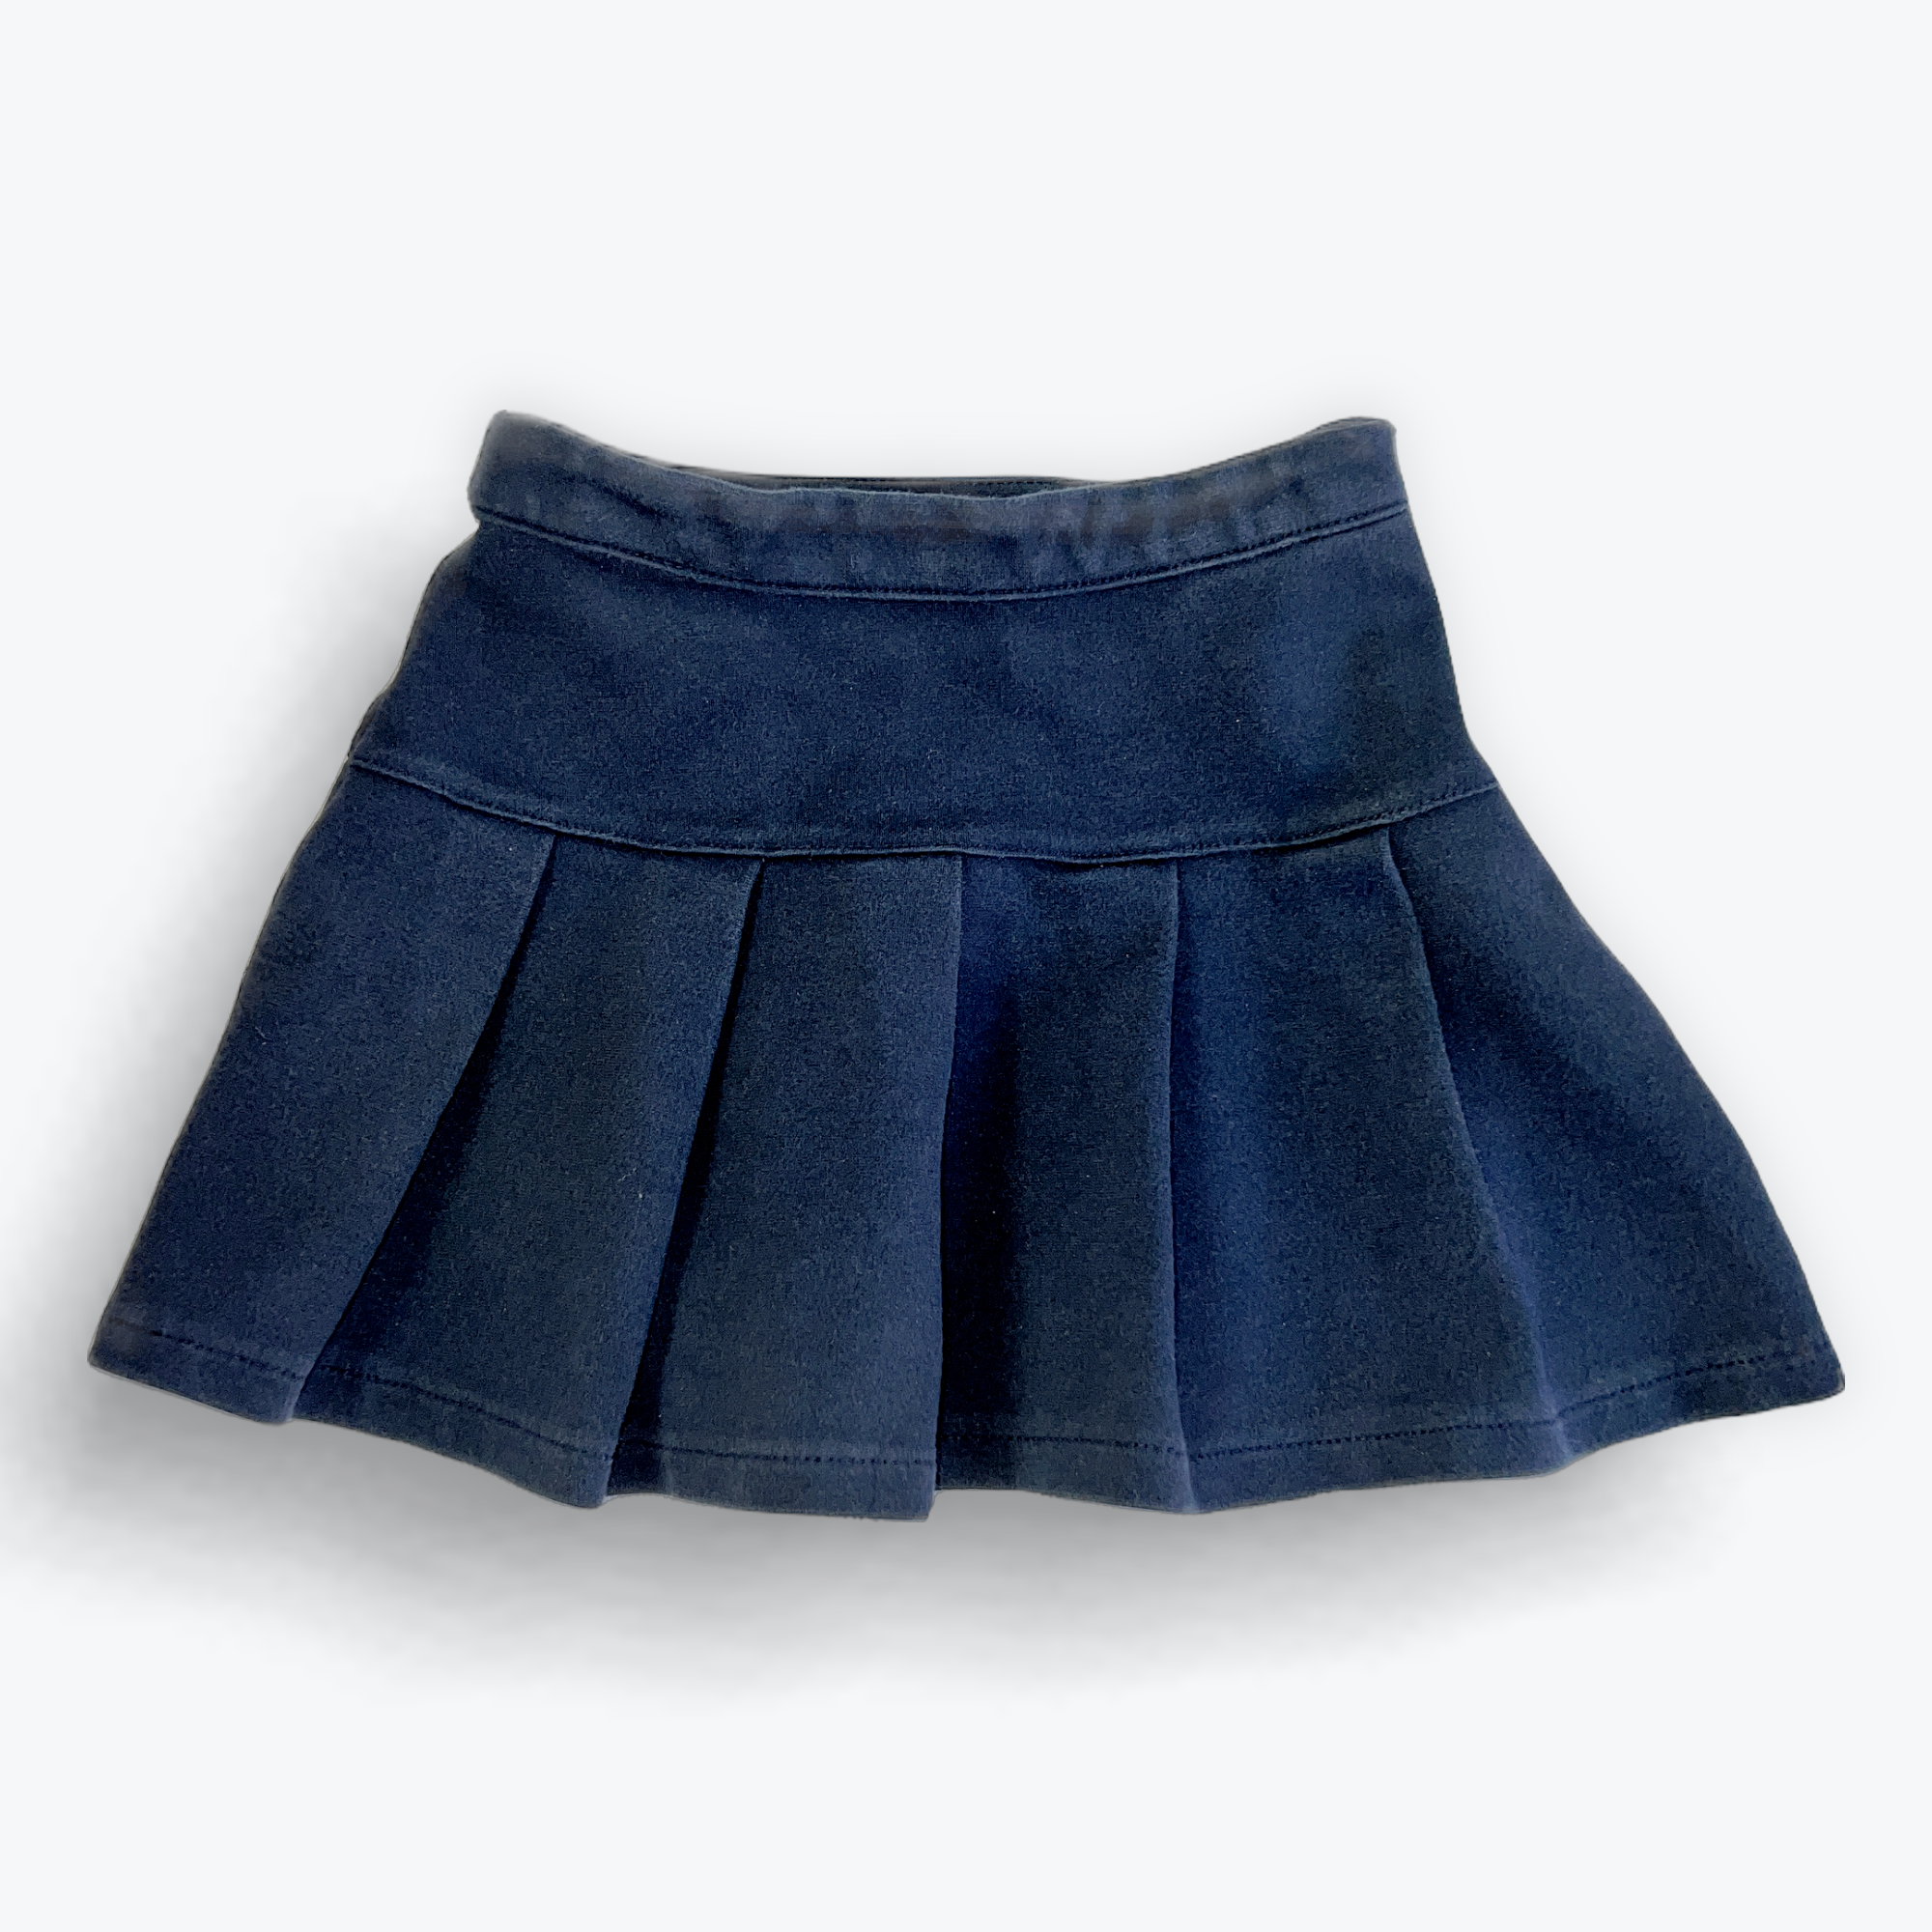 Navy Cotton Pleated Skirt - 4/5